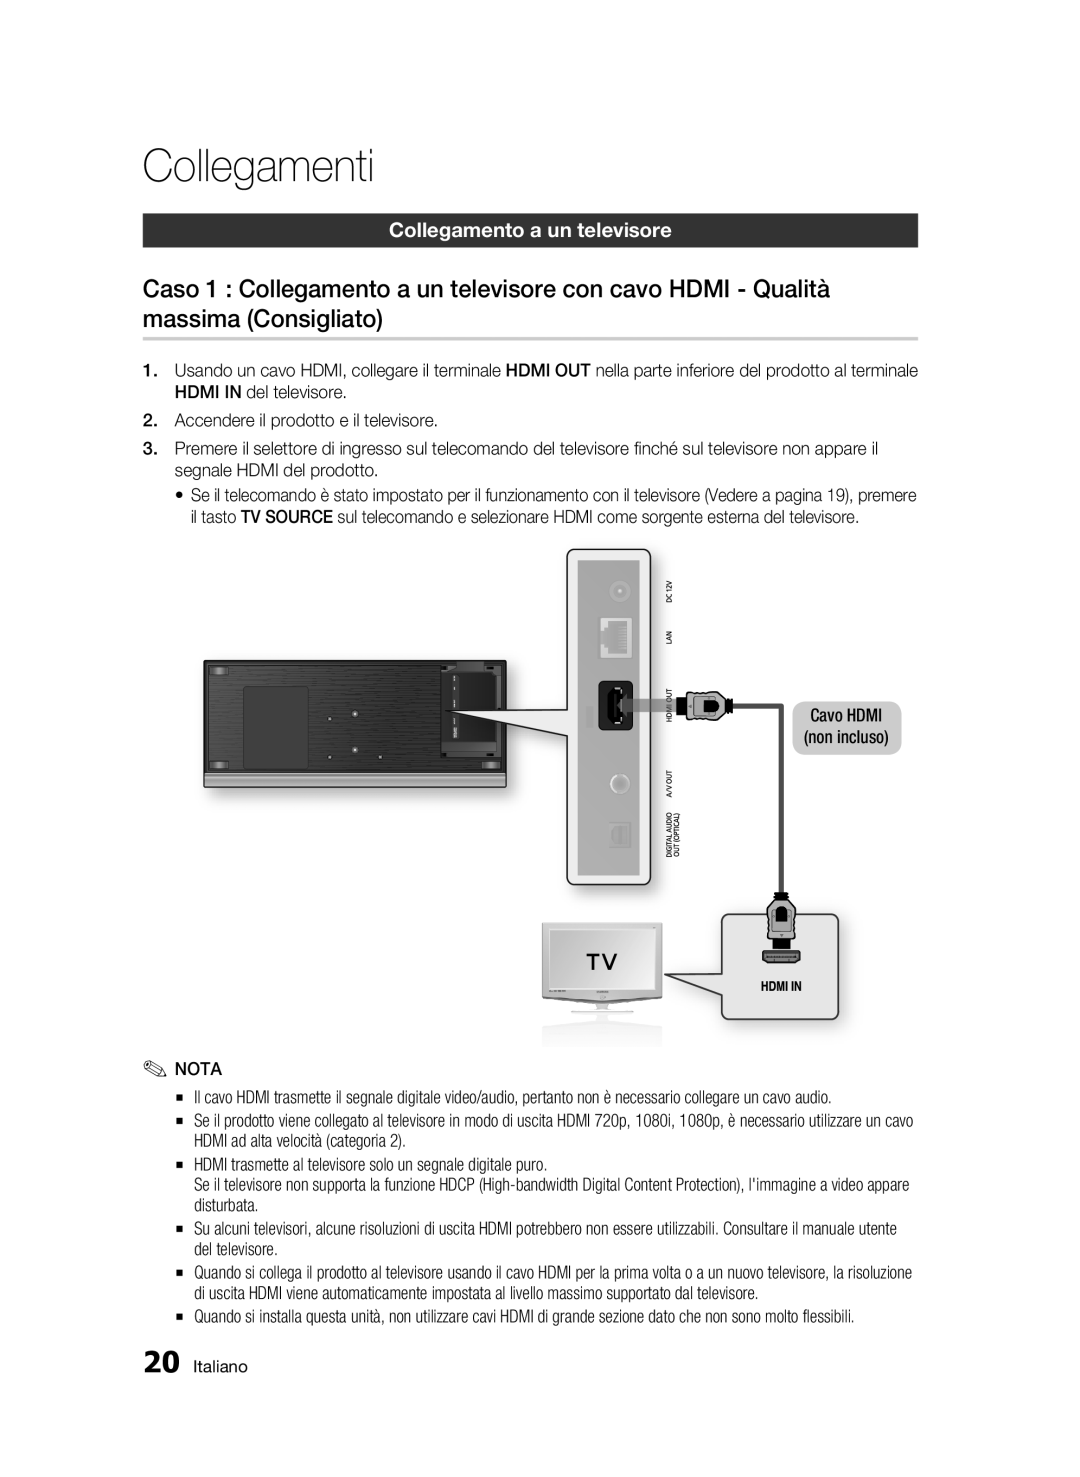 Samsung BD-C7500/XEF, BD-C7500/EDC manual Collegamenti, Collegamento a un televisore, Cavo Hdmi Non incluso 